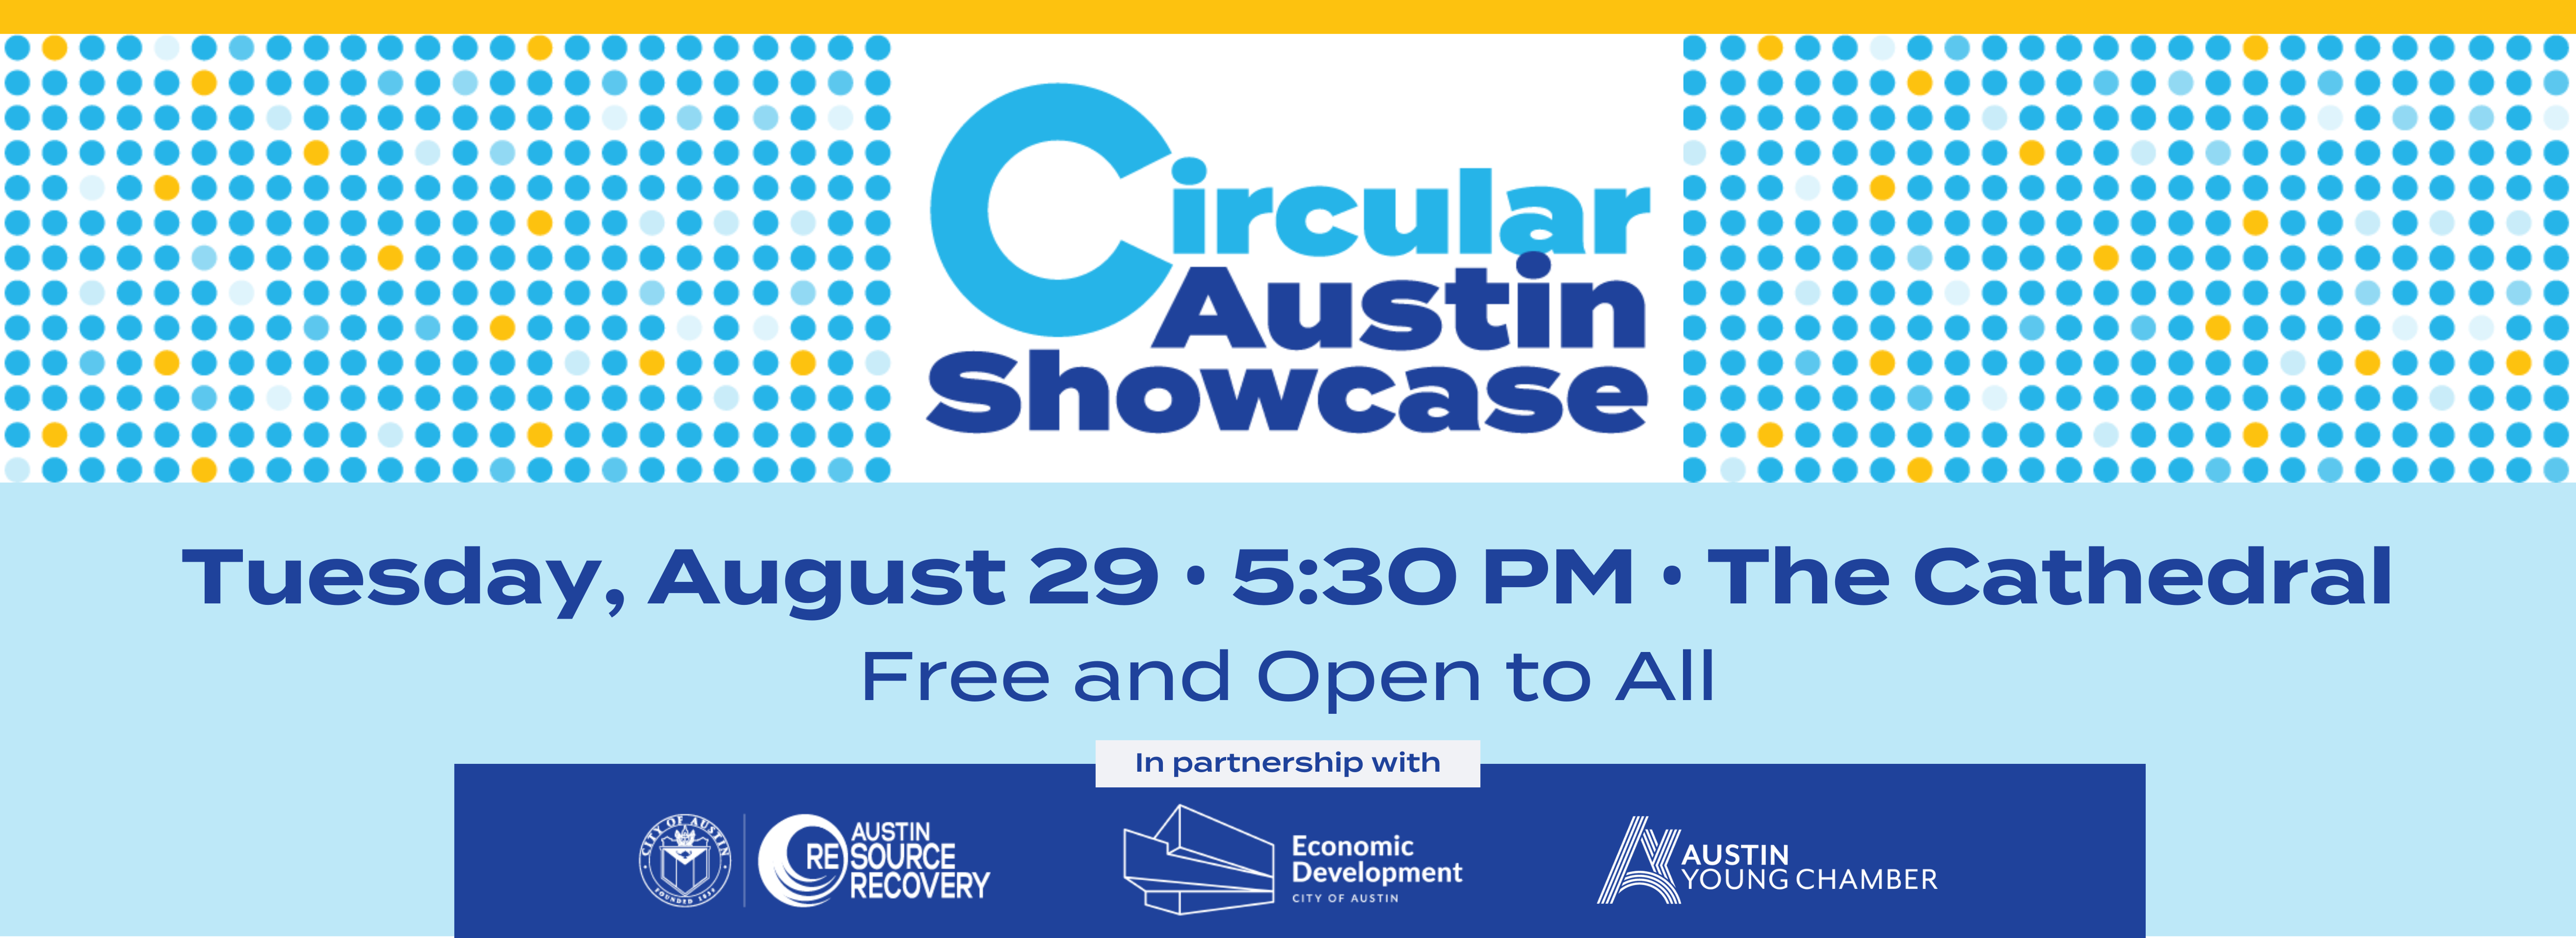 Circular Austin Showcase